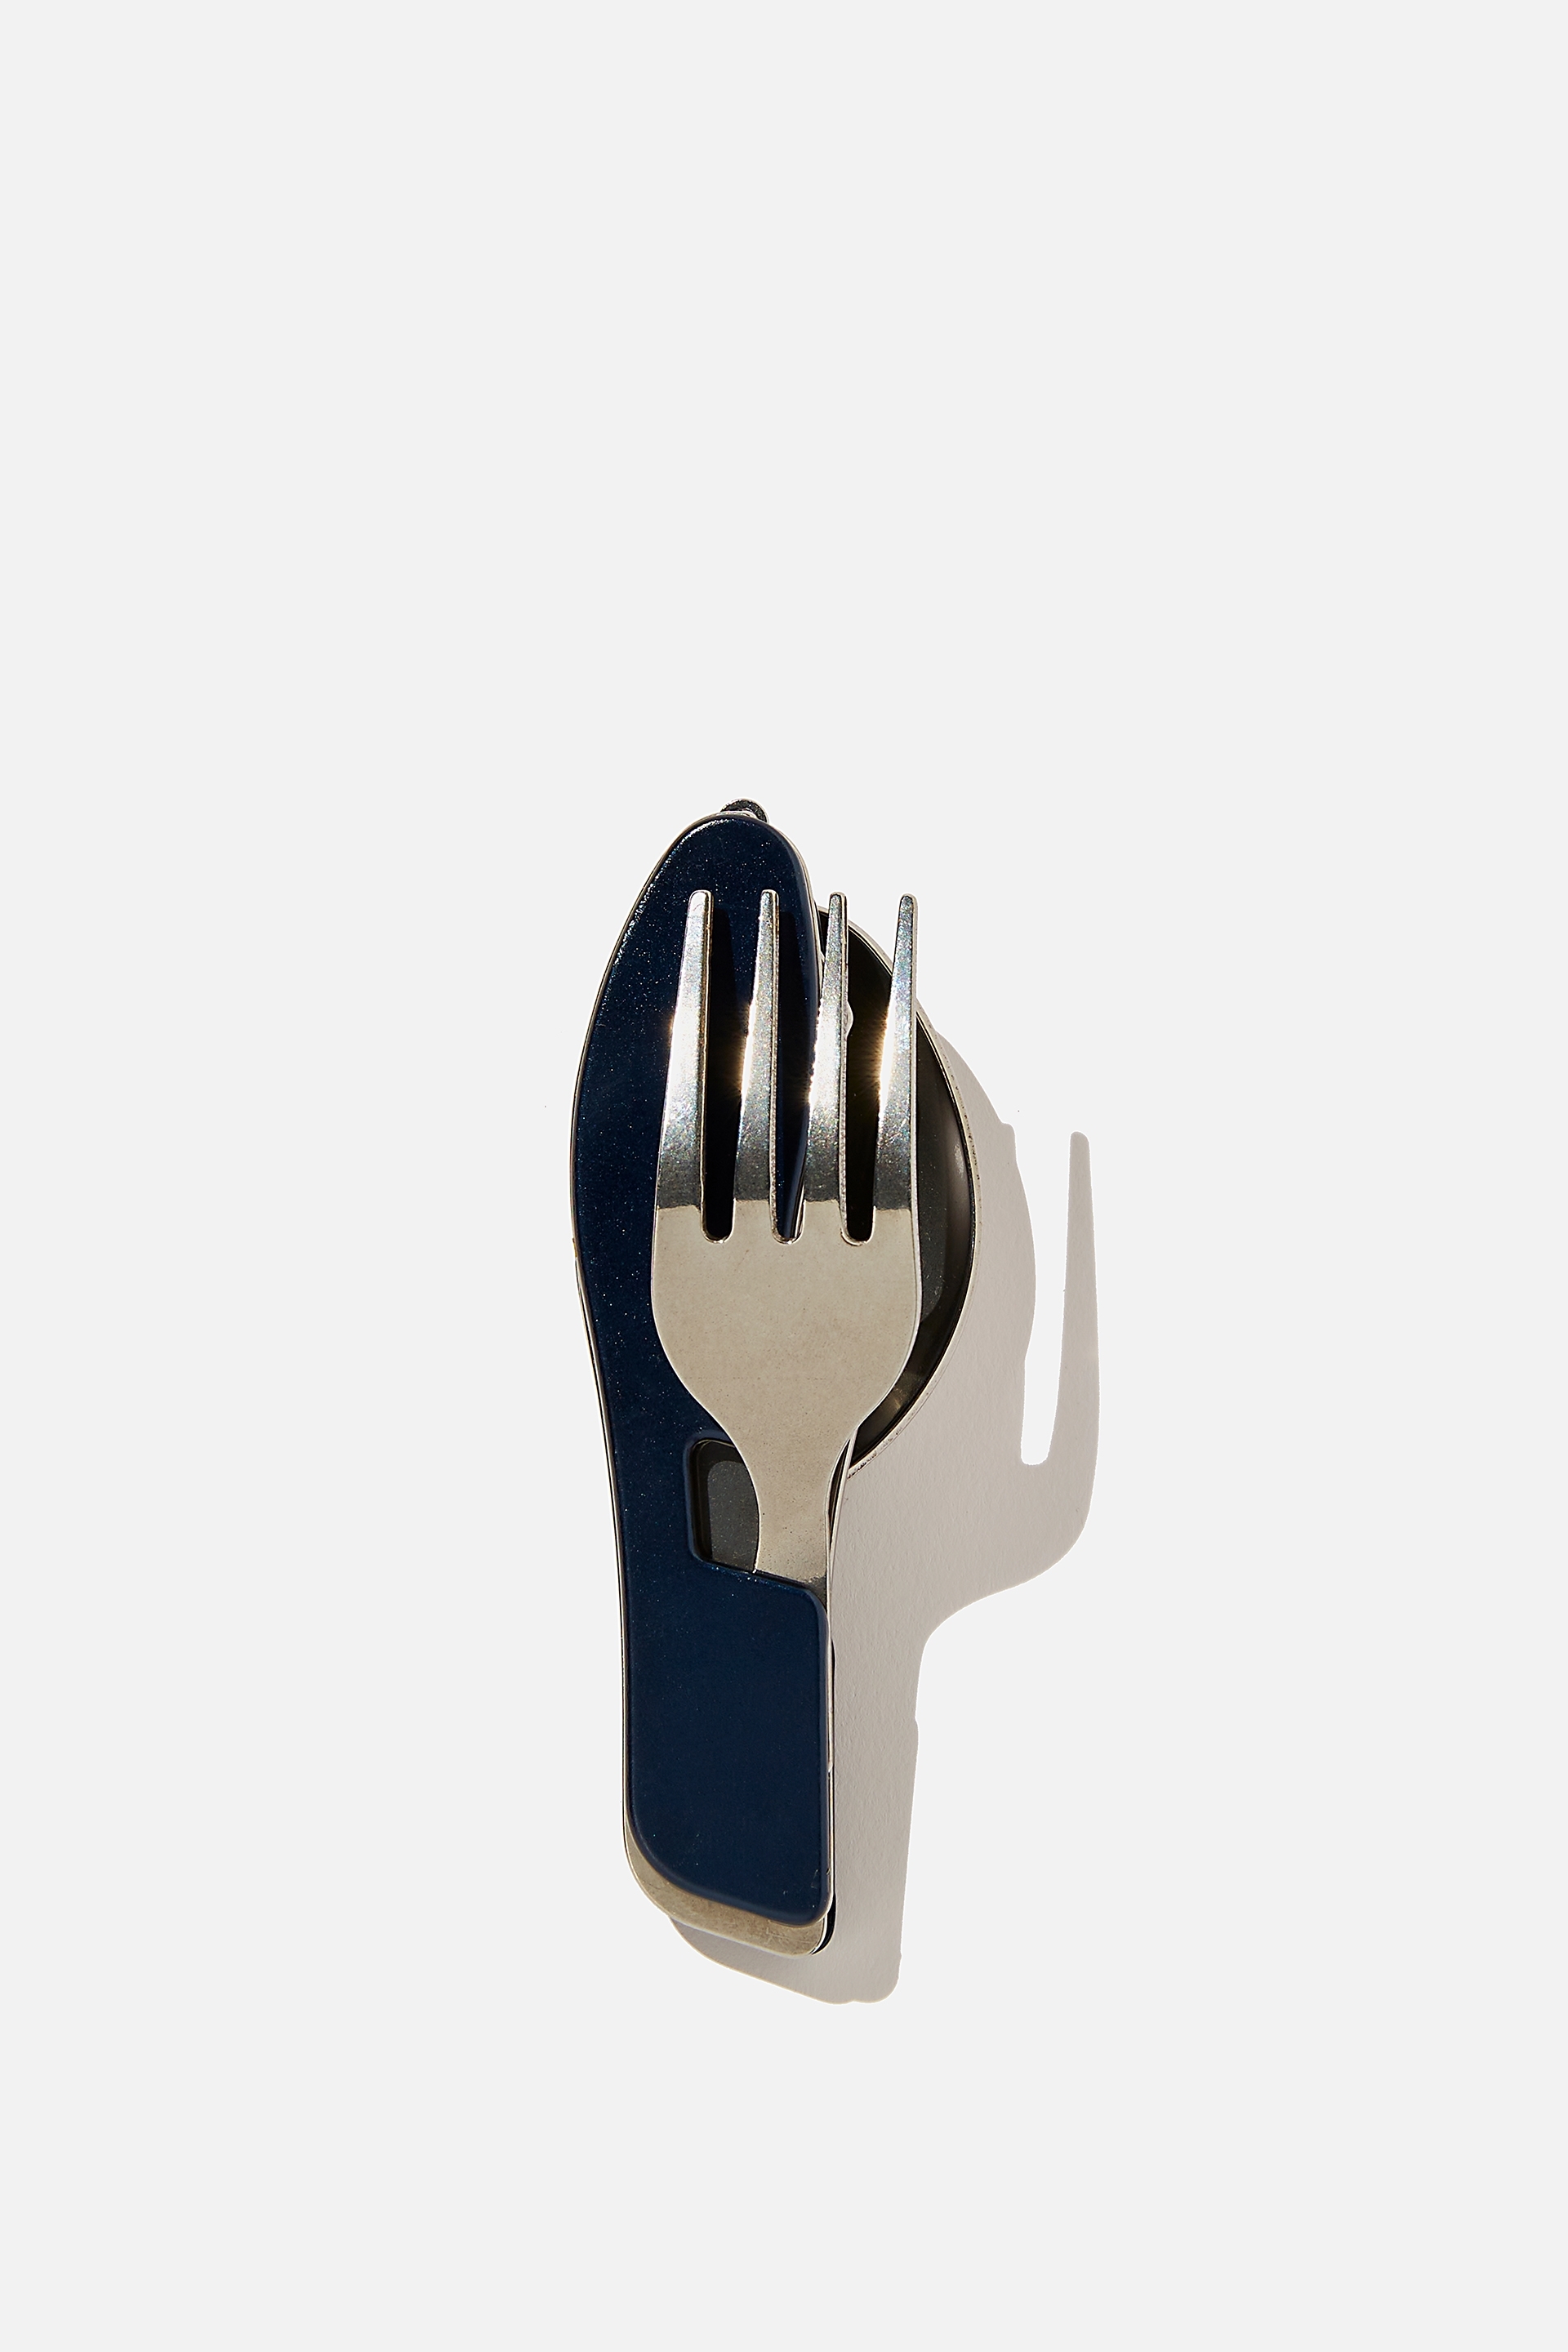 Typo - Pocket Cutlery Set - Indigo